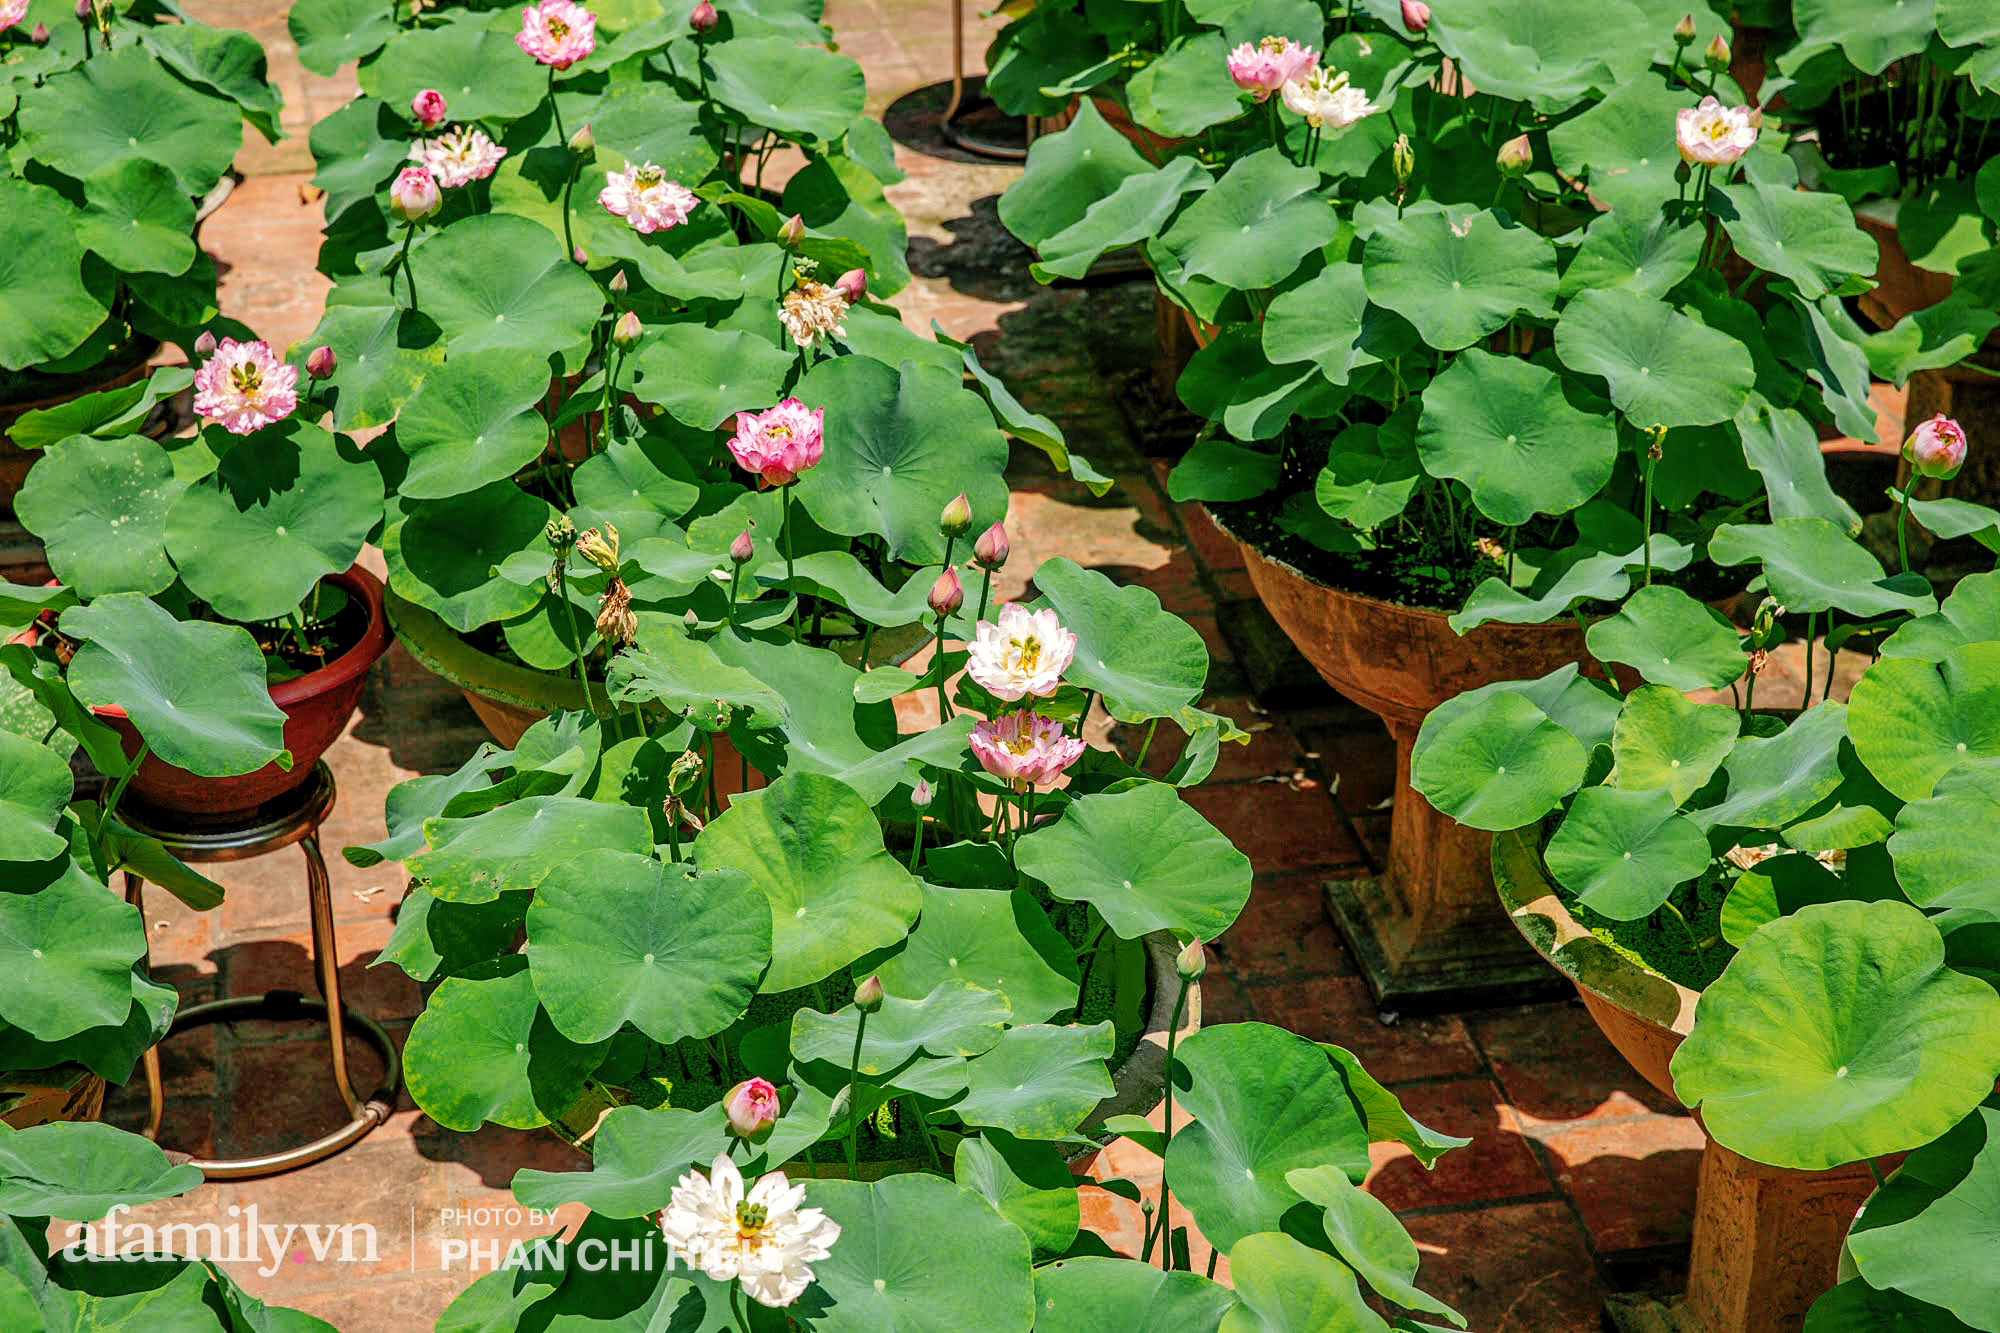 Độc đáo với thú chơi sen cung đình Huế tại Hà Nội, nở hoa tuyệt đẹp giữa ngôi nhà cổ trăm năm tuổi khiến bao người mê mẩn - Ảnh 10.